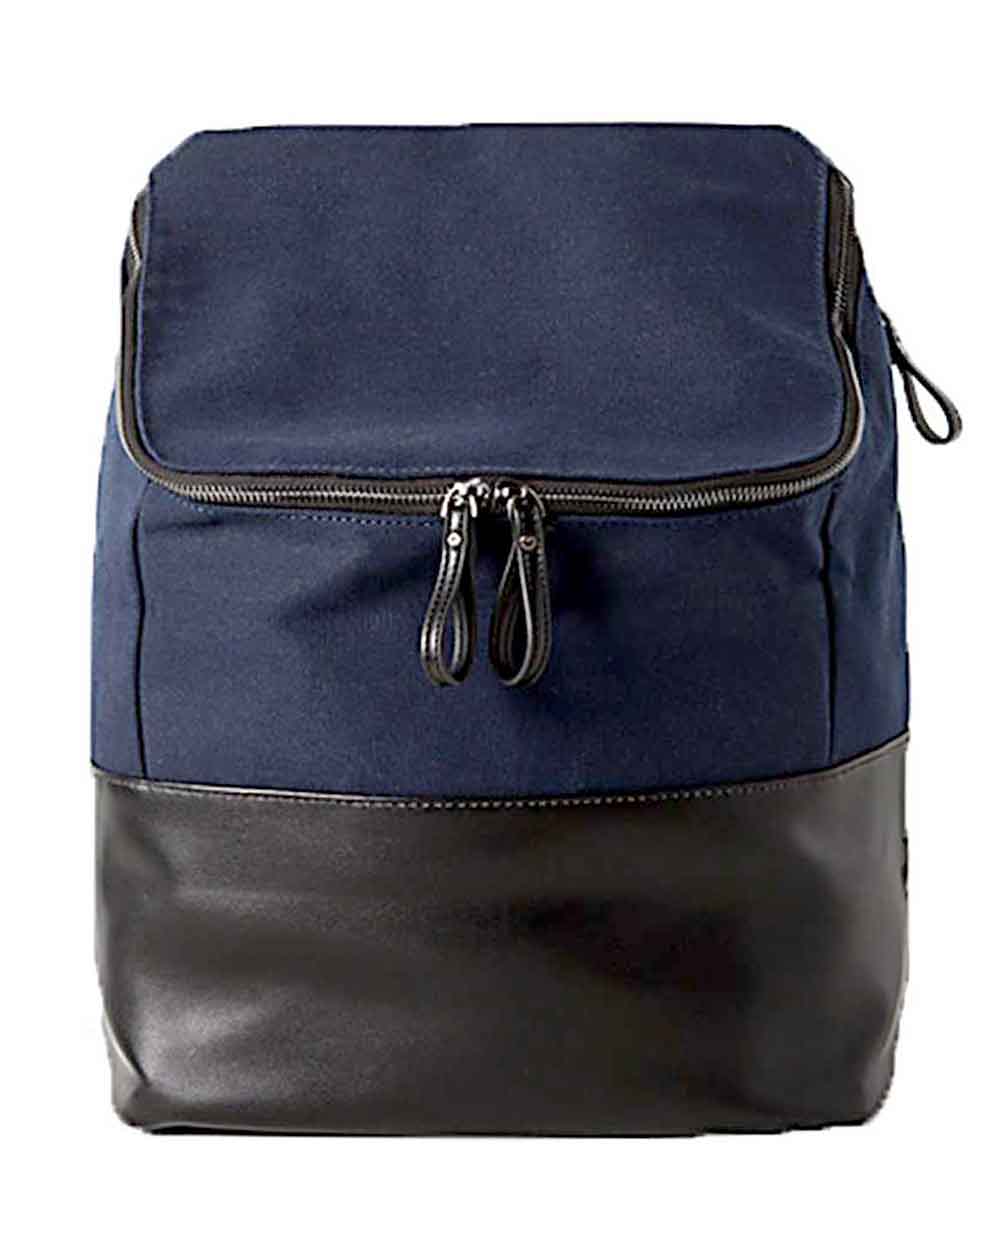 Рюкзак тканевый с кожаным дном YellowStone Hippo Bag Navy отзывы